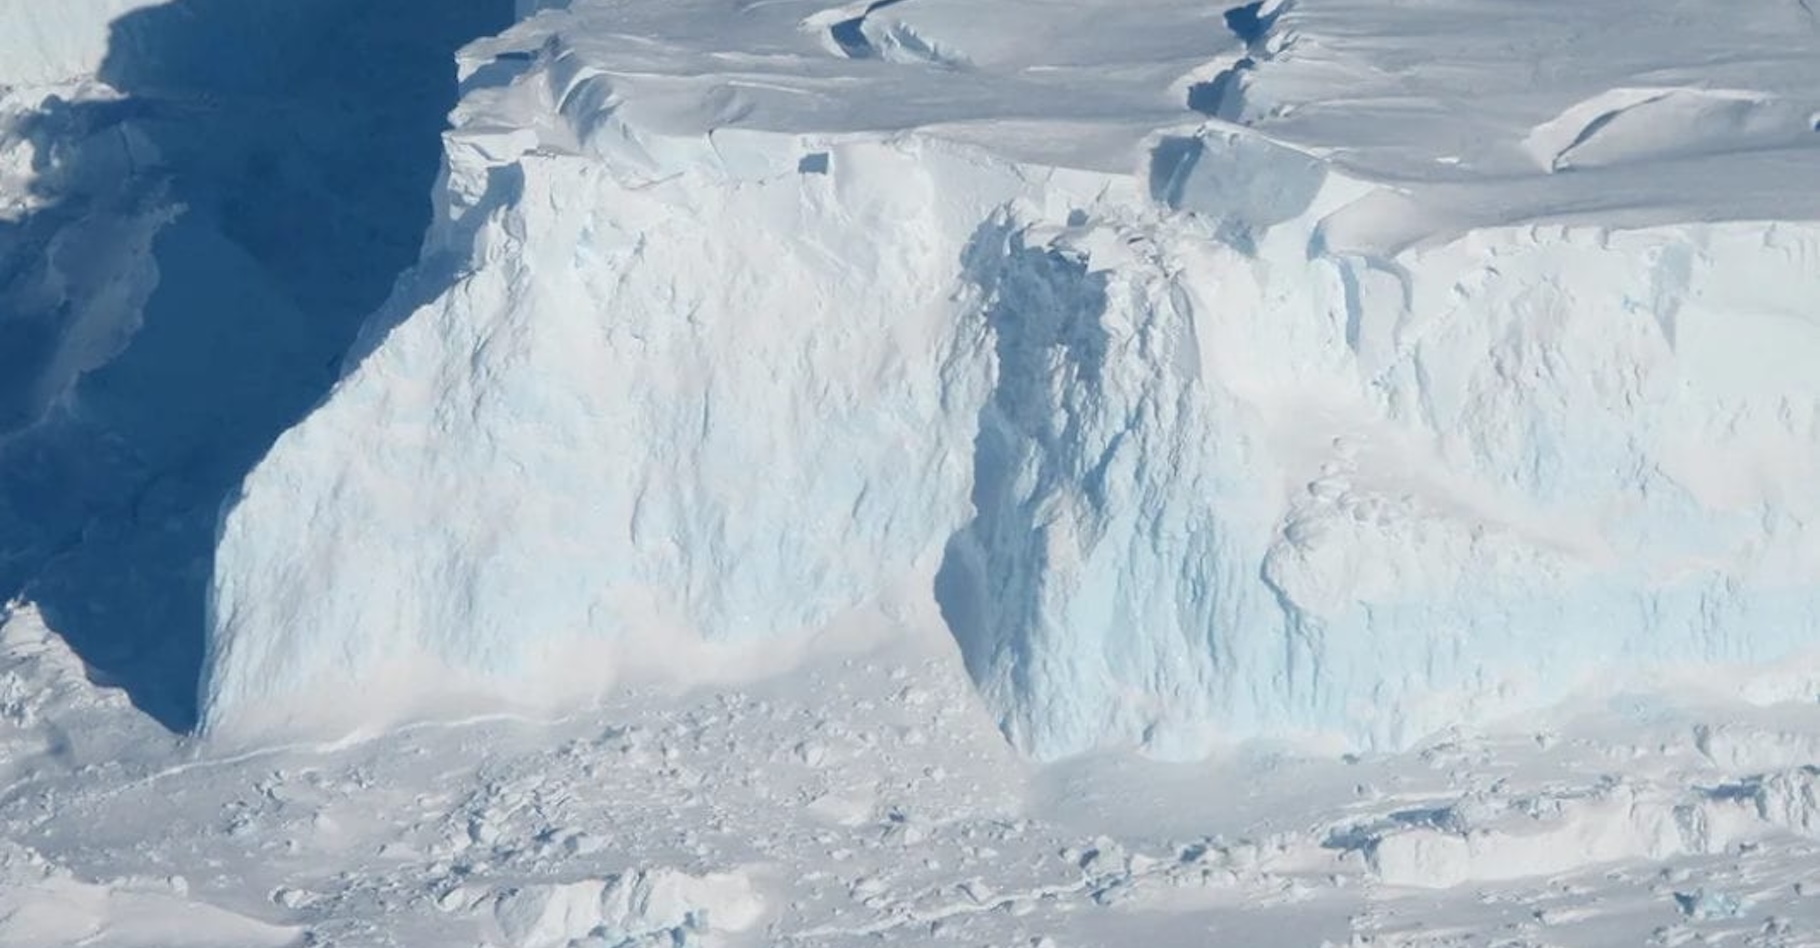 Des glaciologues de l’université de Californie (États-Unis) ont utilisé des données radar satellitaires pour reconstituer l’impact de la montée des eaux chaudes de l’océan à plusieurs kilomètres sous le glacier Thwaites, dans l’Antarctique occidental. © Nasa